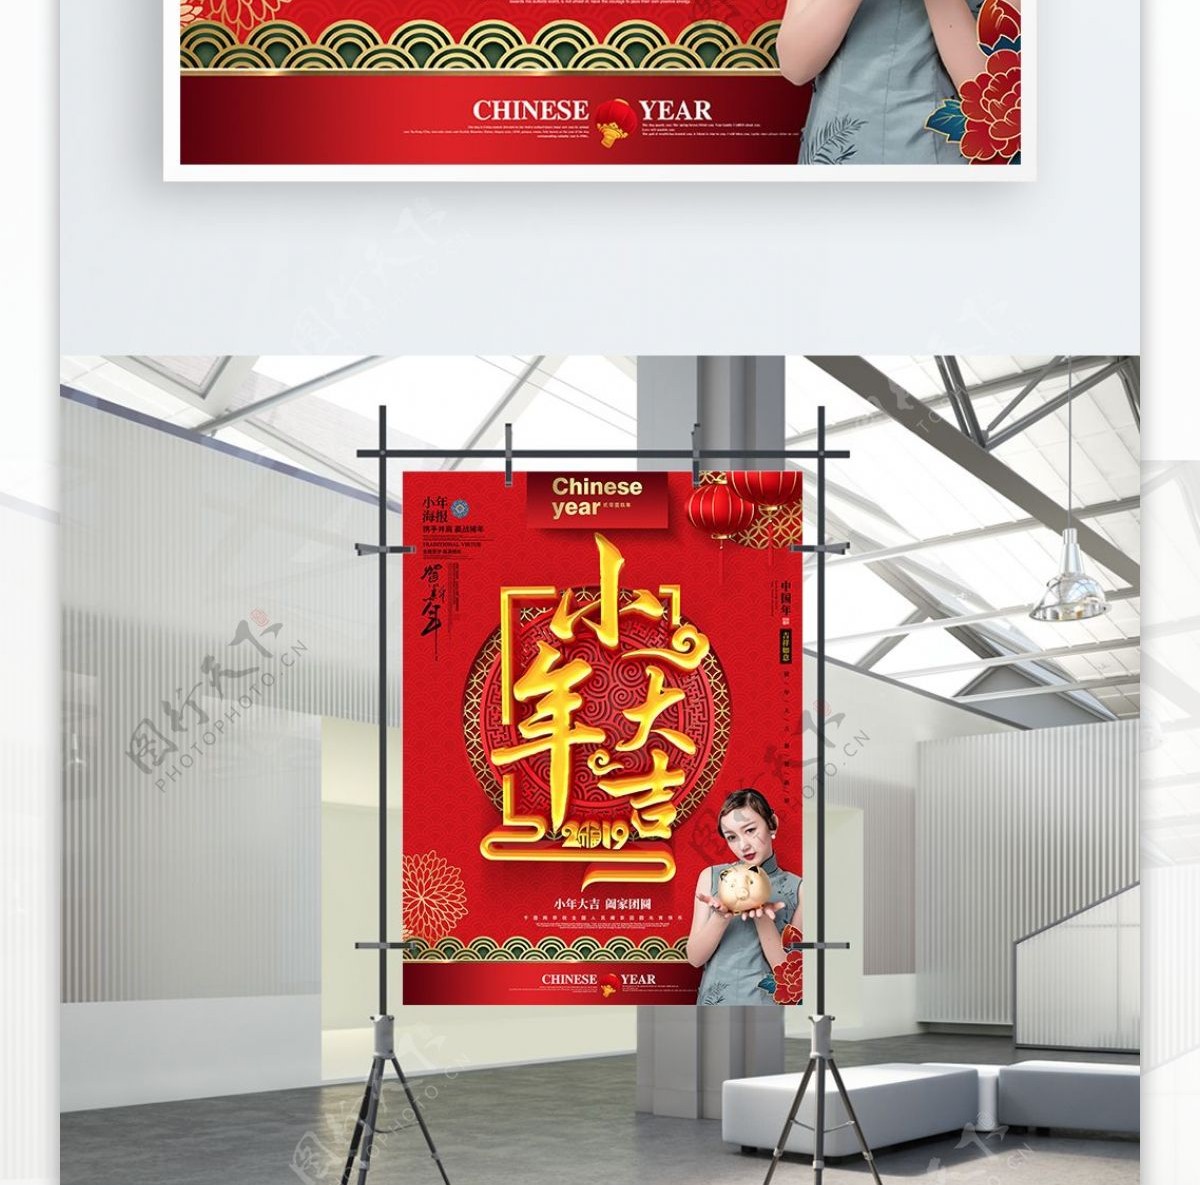 C4D创意中国风小年大吉2019小年海报